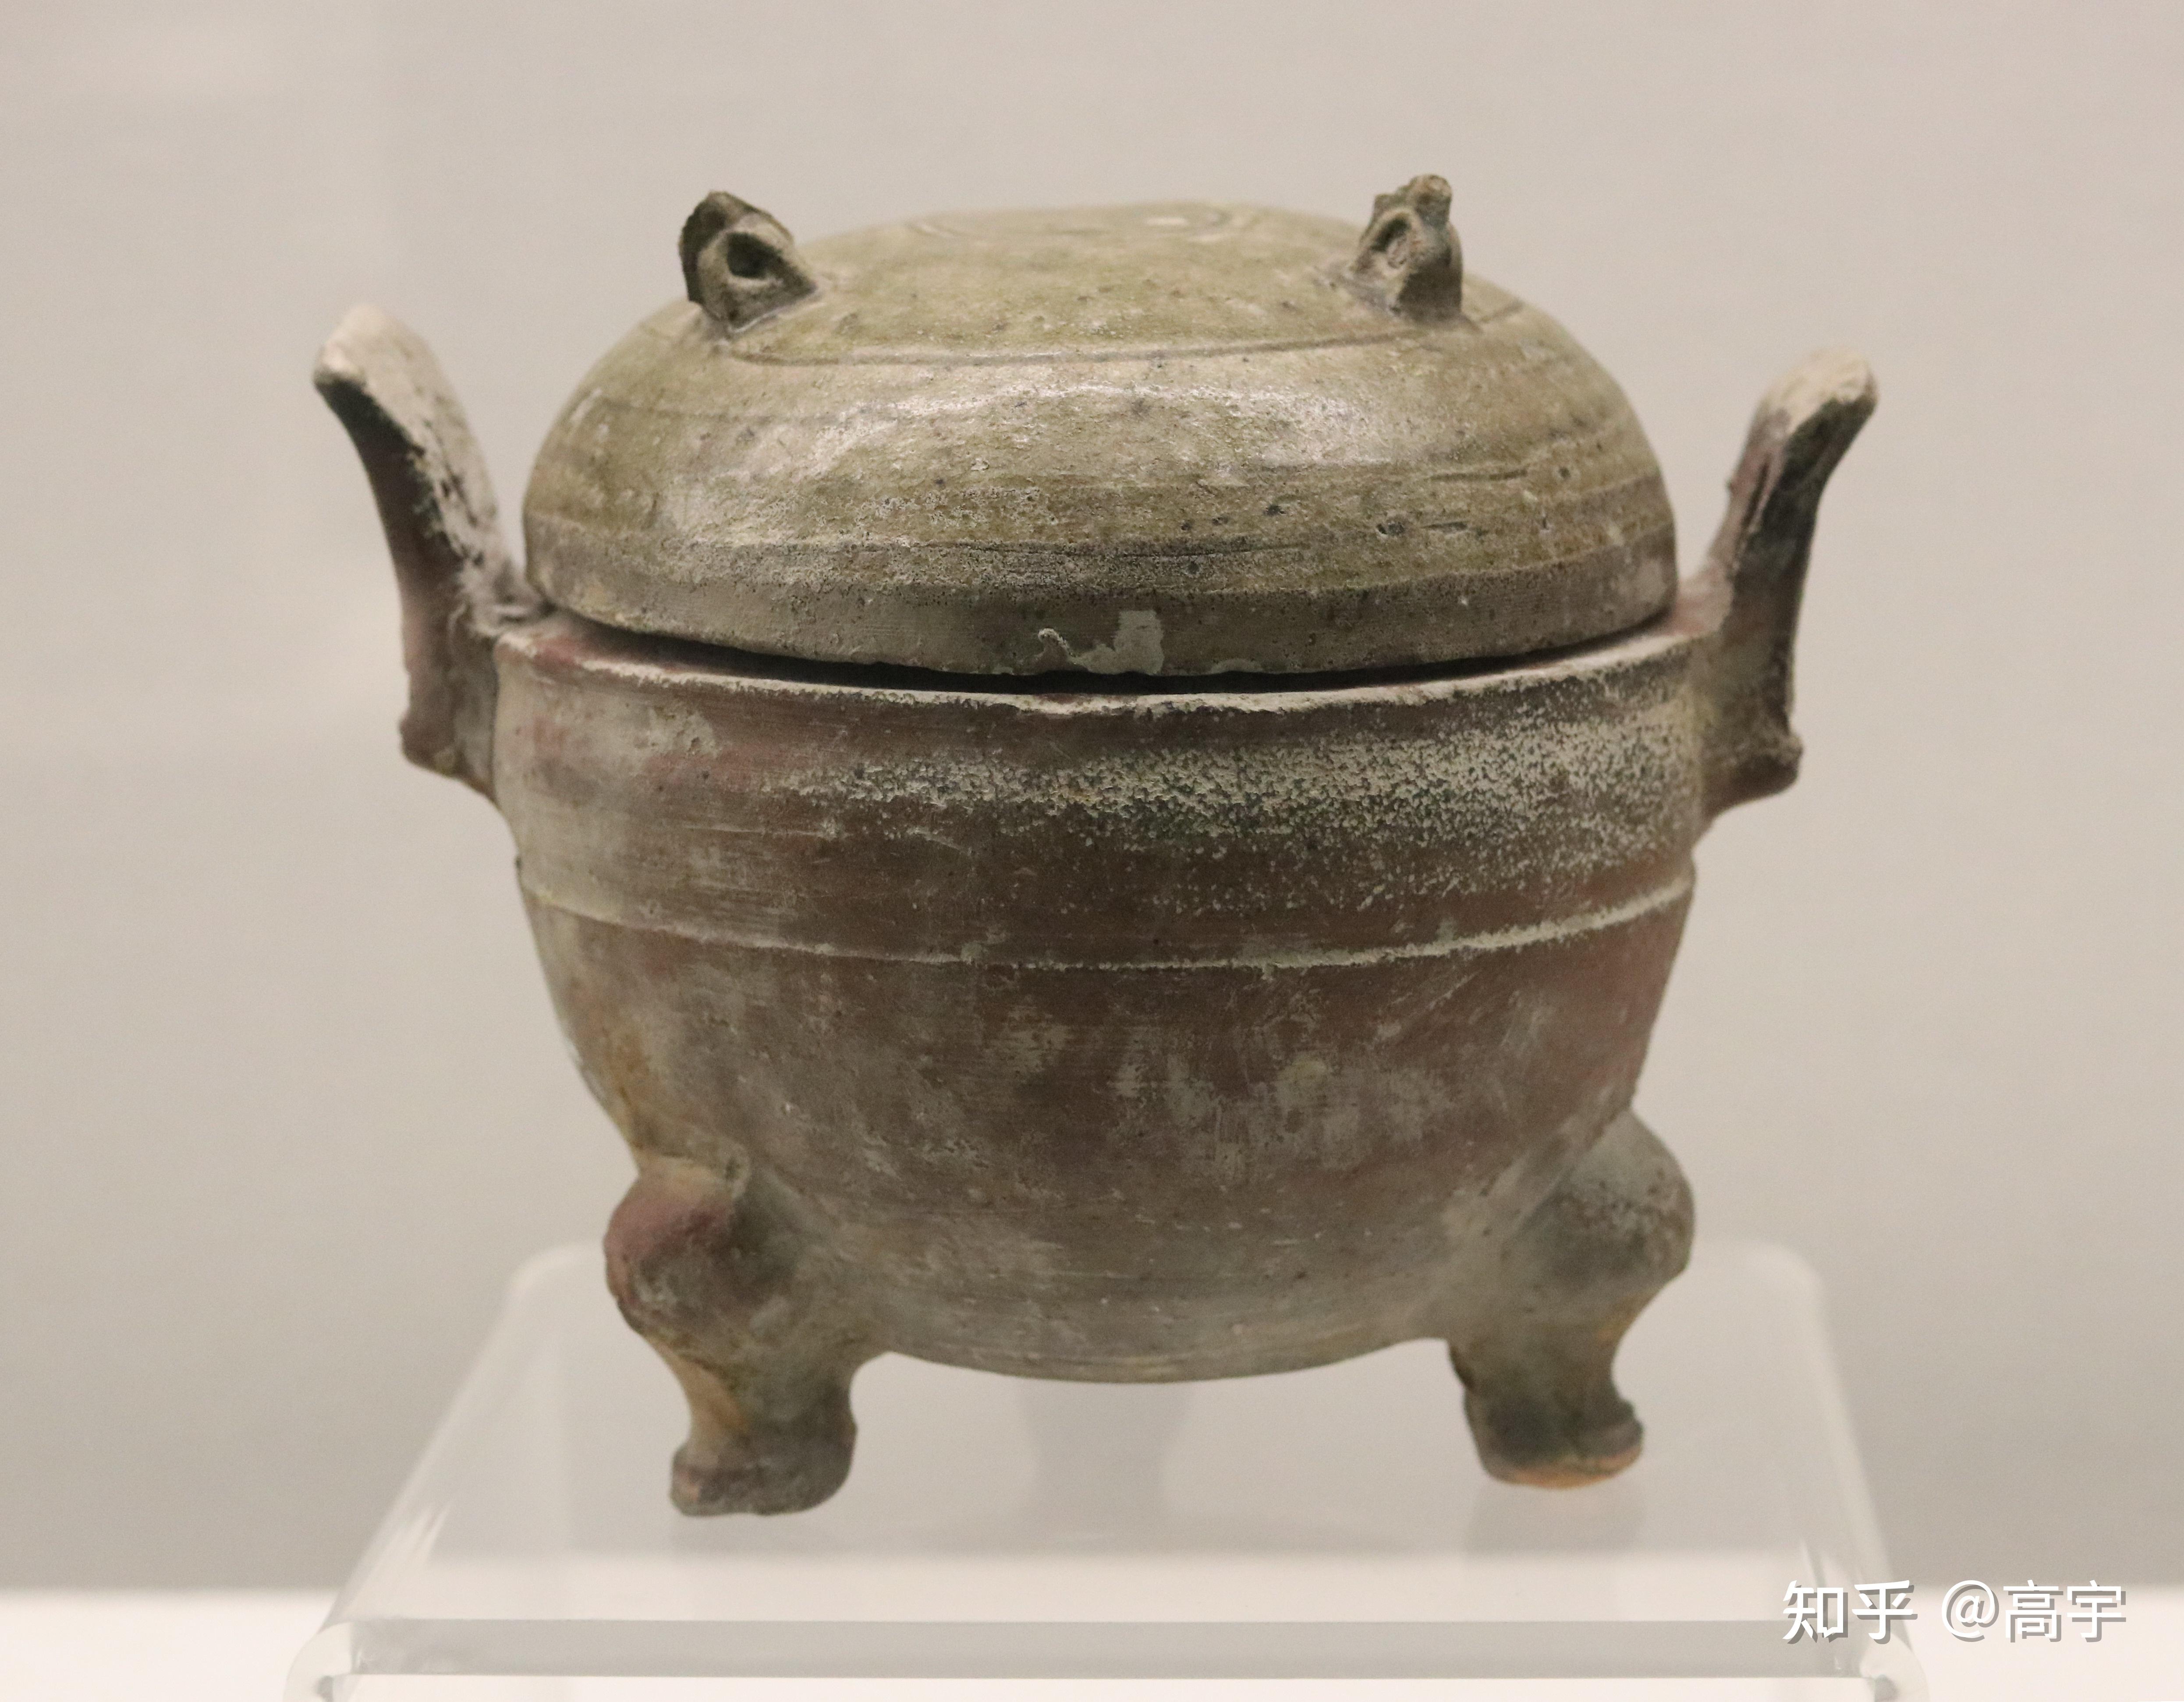 宁波博物馆藏西汉原始青瓷鼎原始青瓷之原始,在于两个地方:1,它的胎